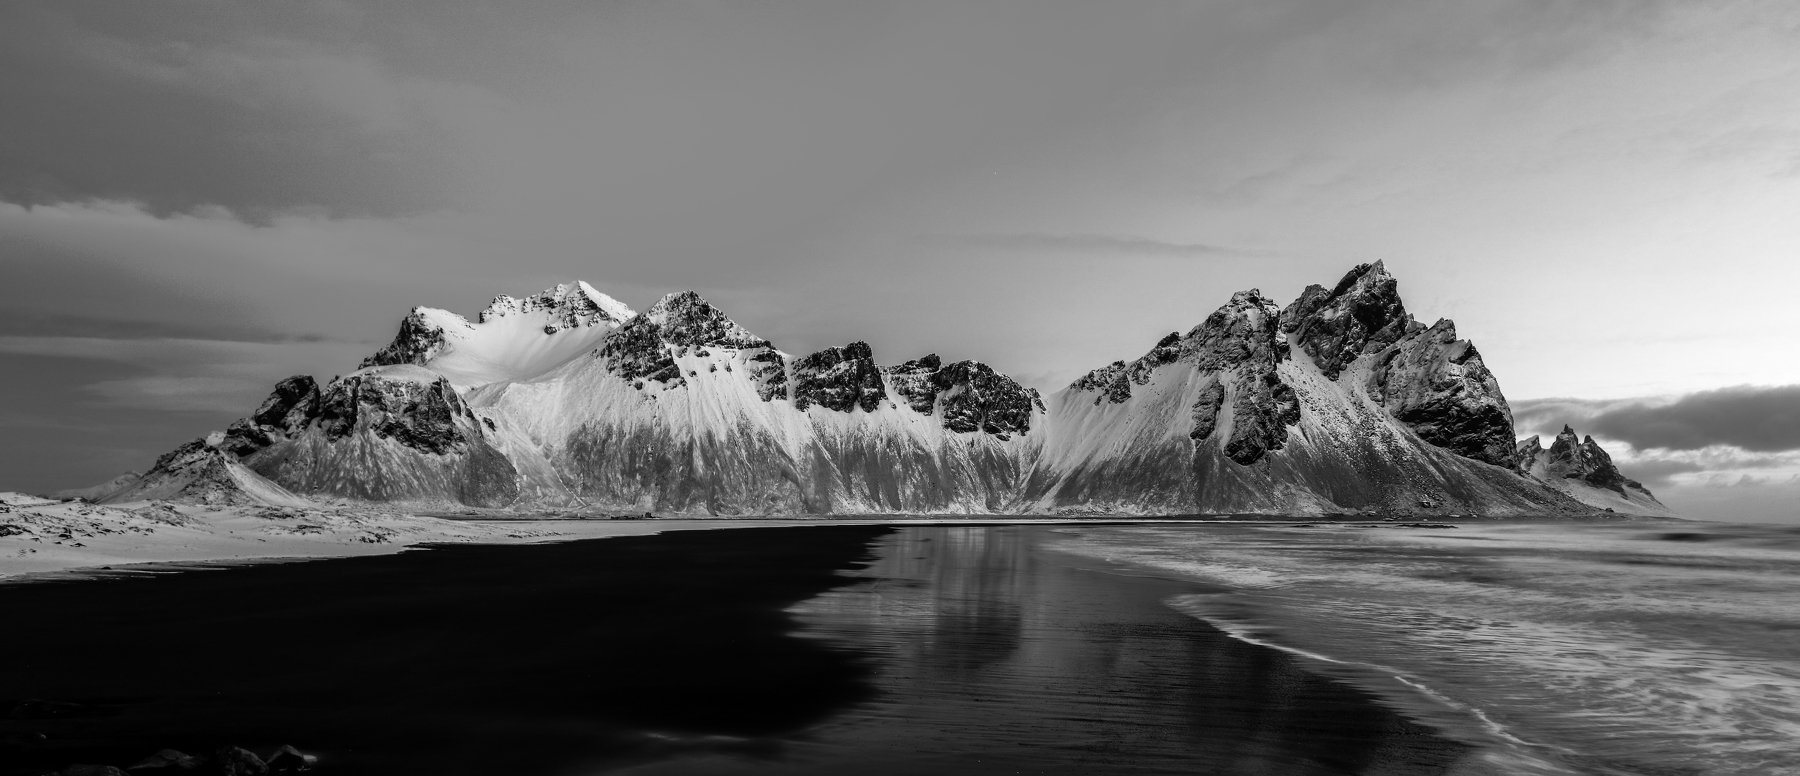 iceland,vestrahorn,горы,рассвет,пейзаж,черно-белое, Ruslan Stepanov